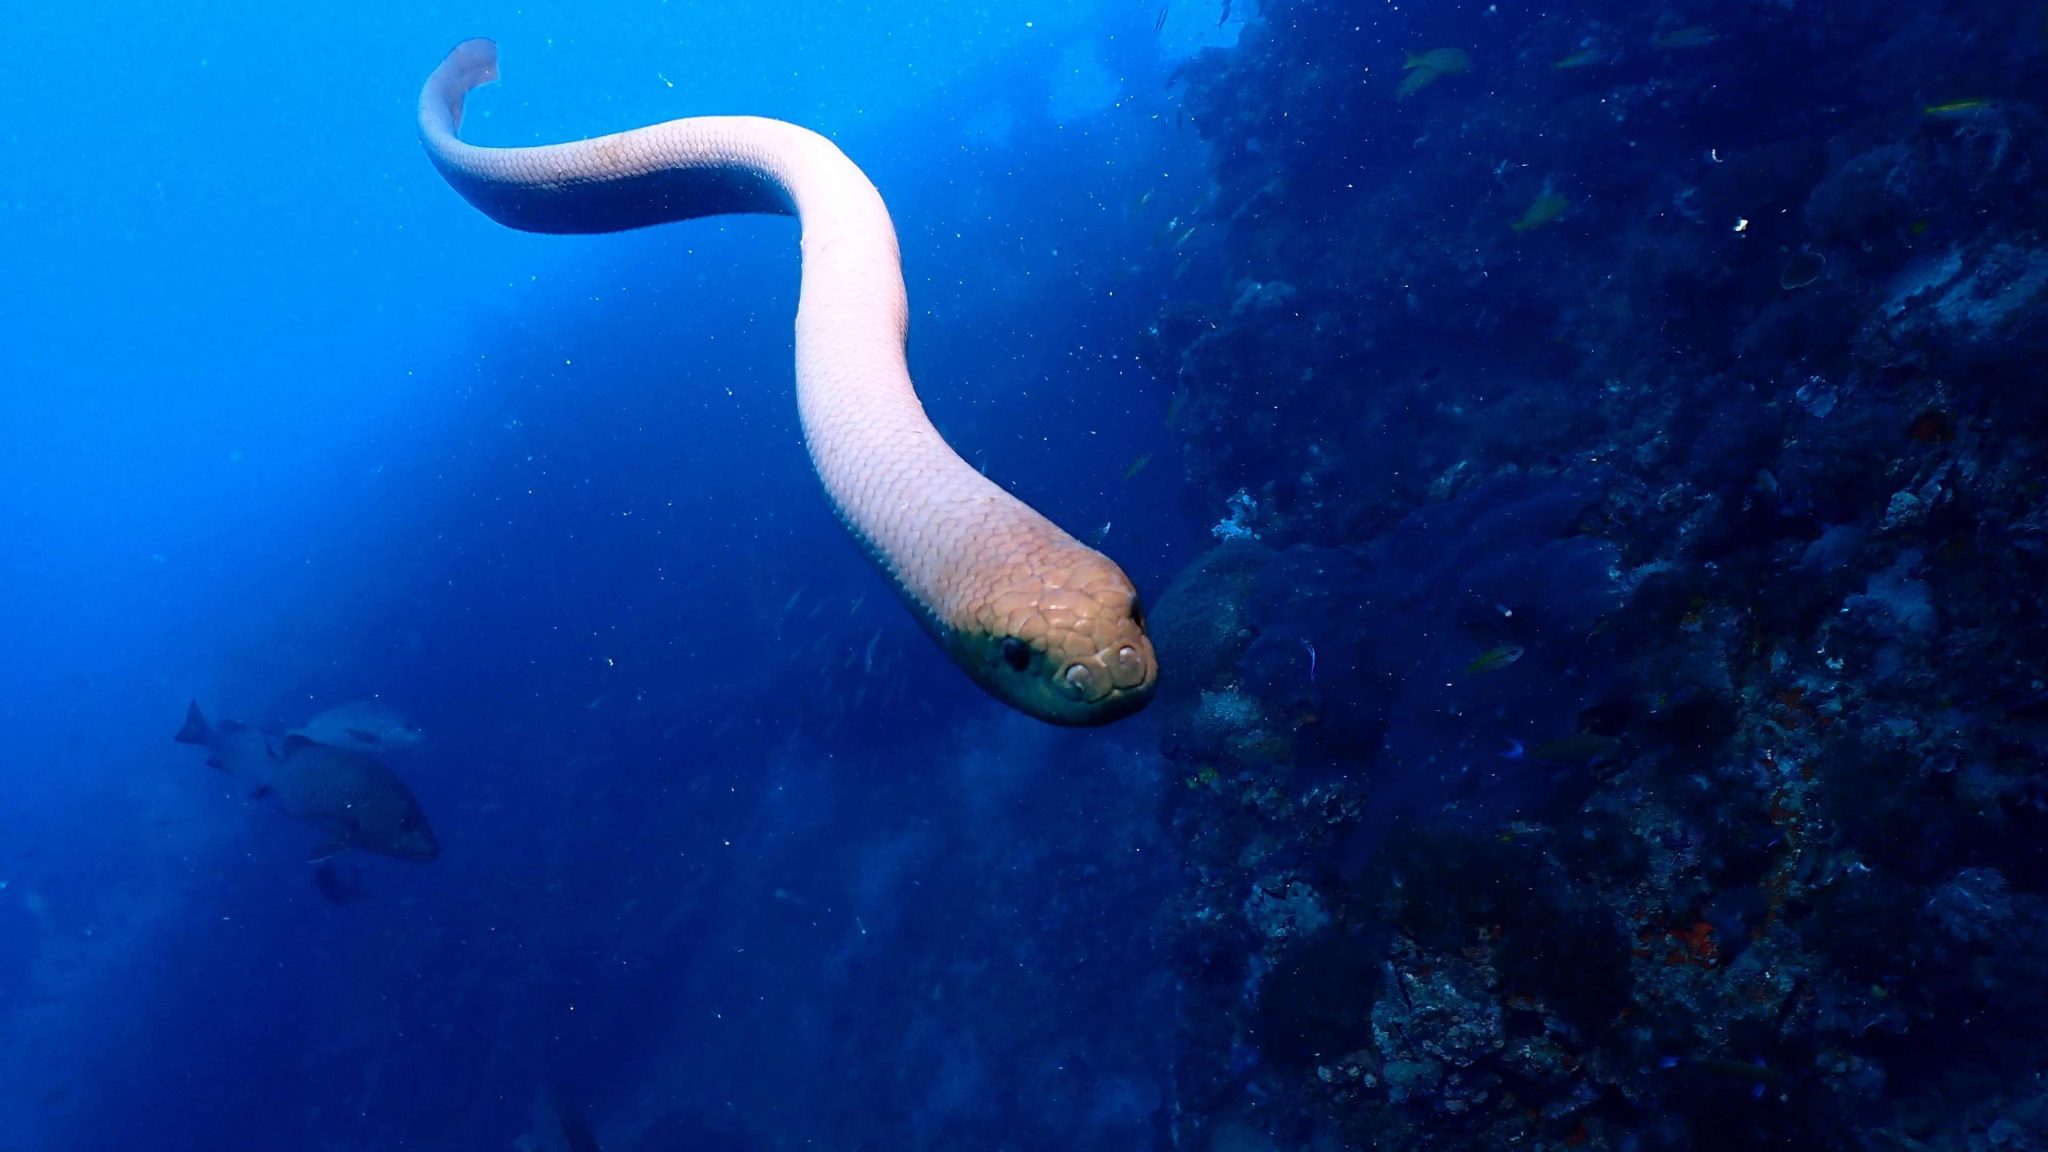 有毒橄榄海蛇攻击潜水员很可能跟交配有关